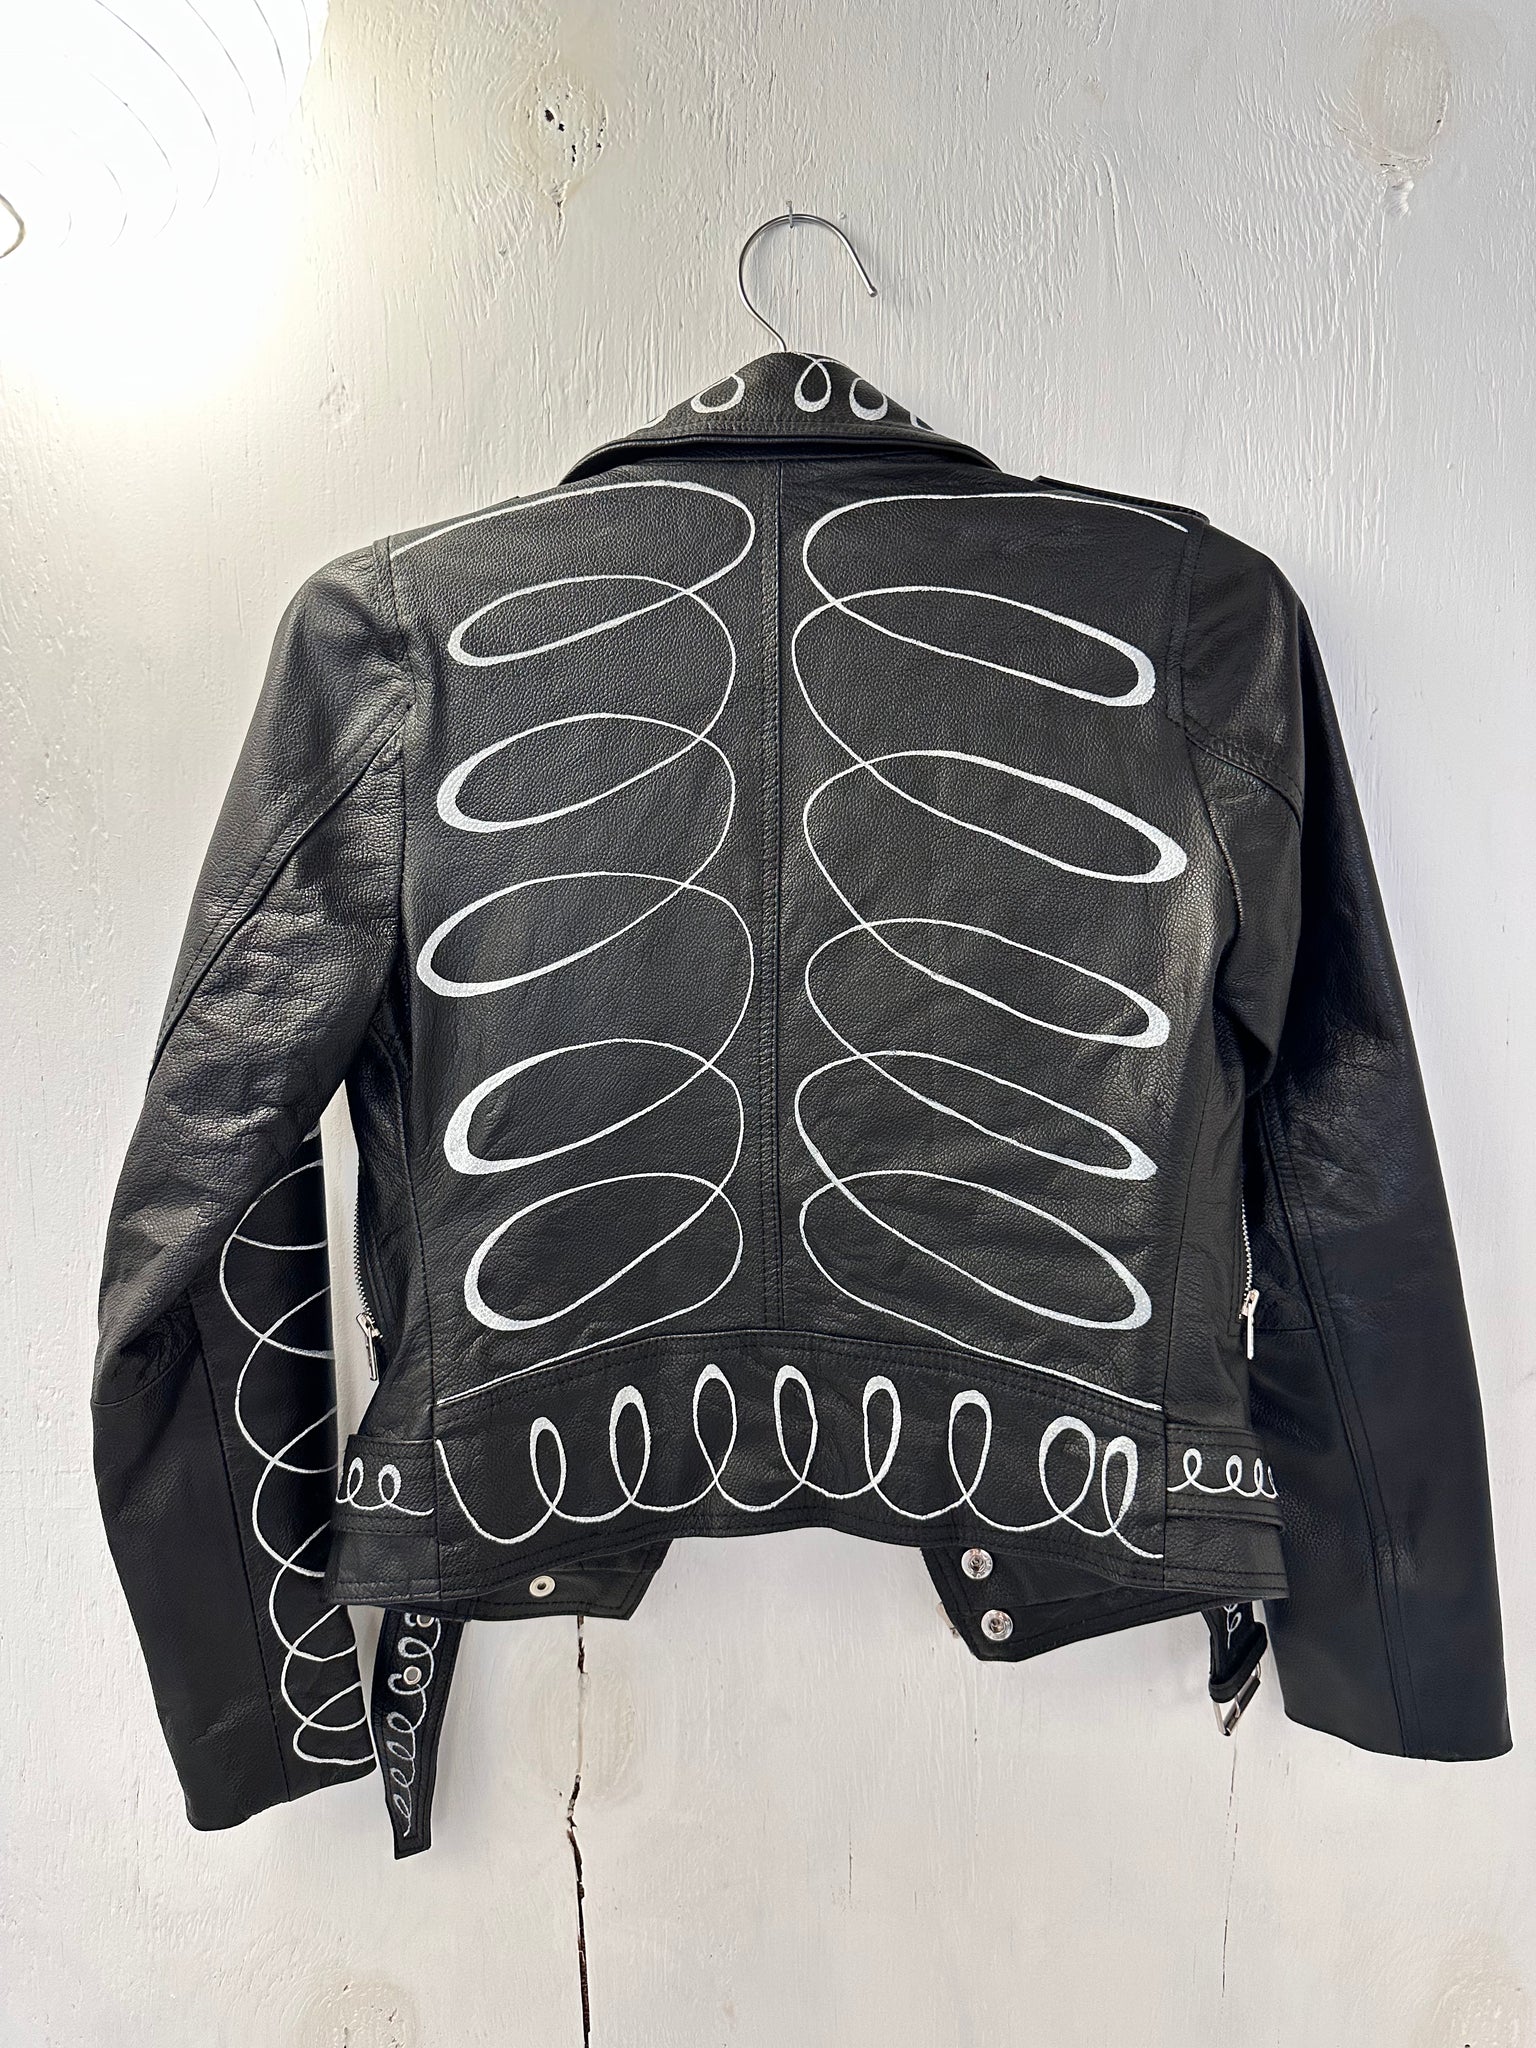 LPX handpainted swirl moto jacket